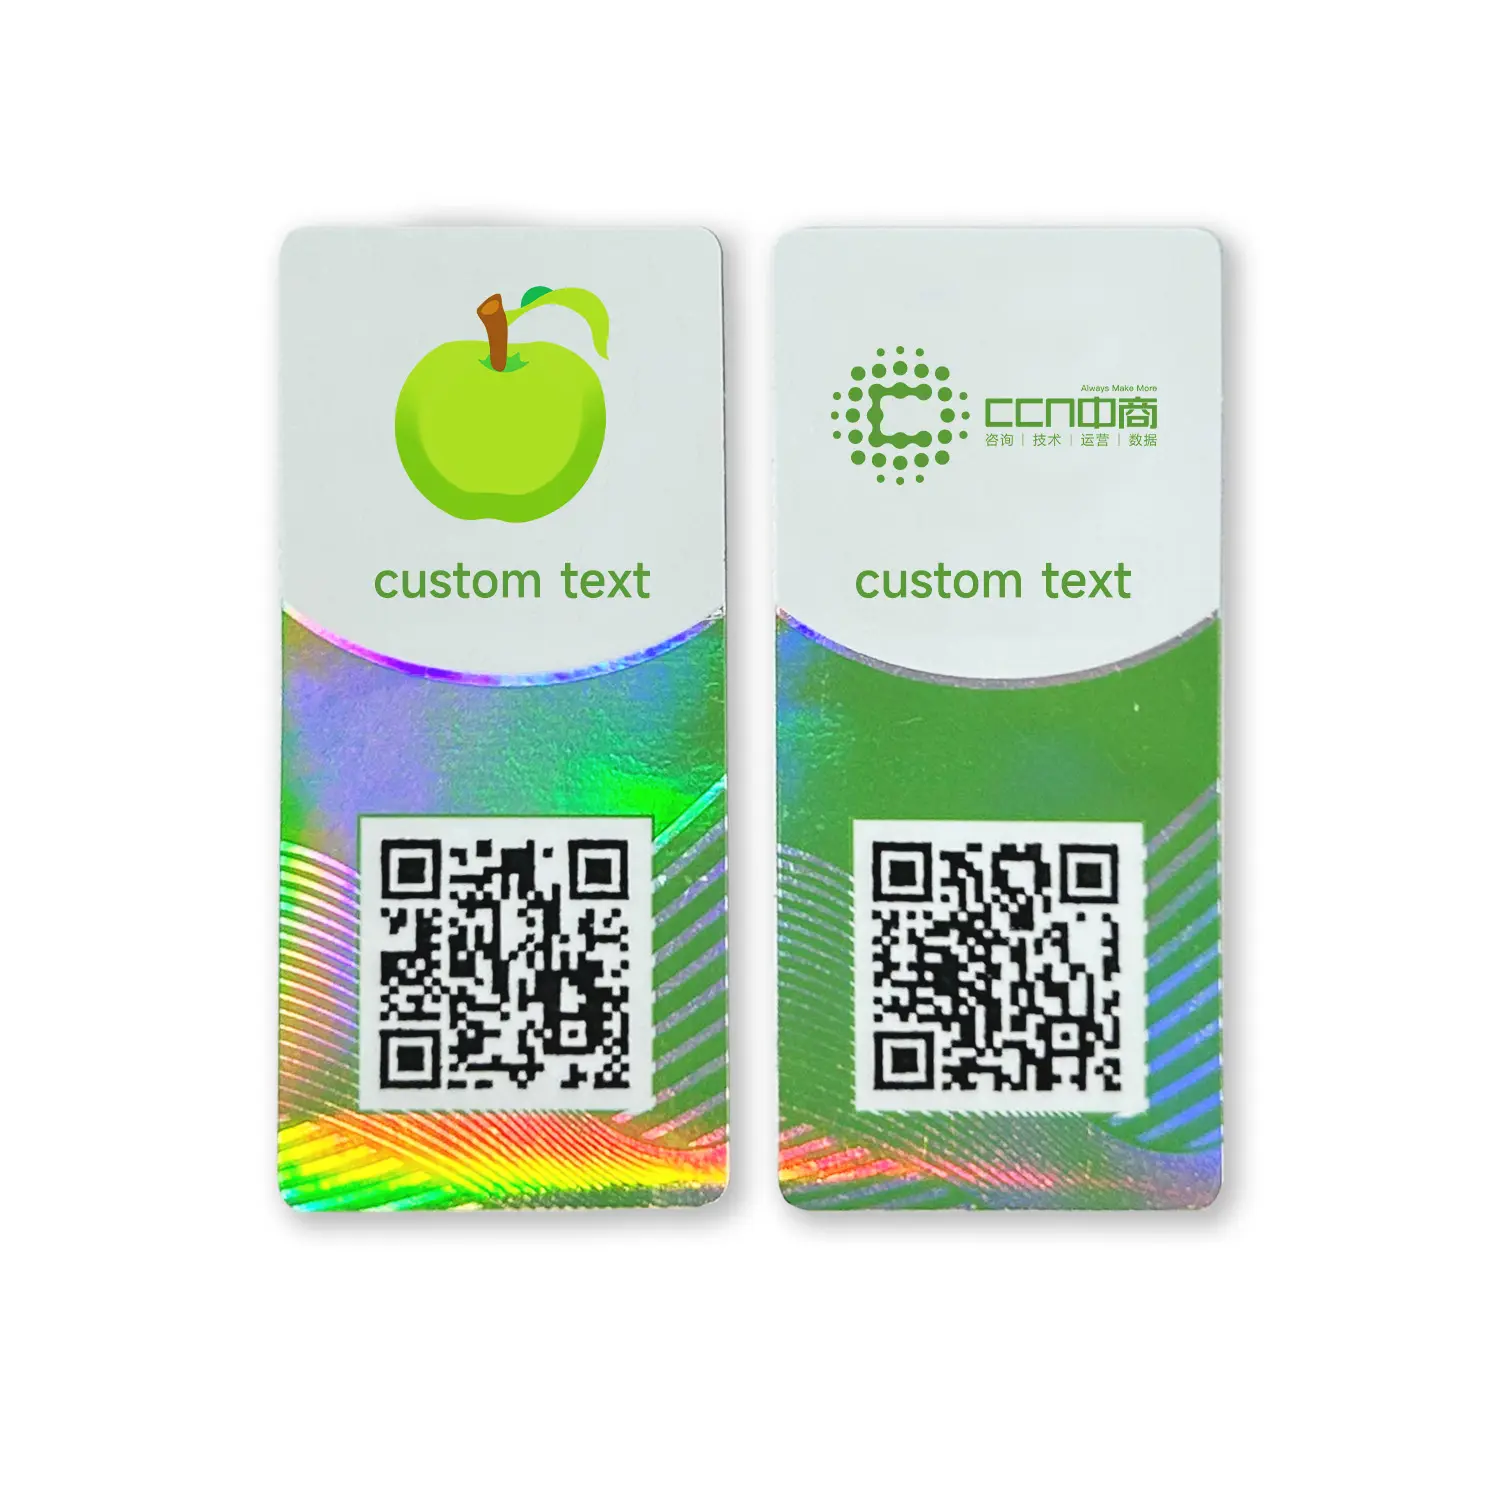 Amplamente utilizado em roupas, calçados, produtos de saúde Tag personalizado Qr Code Stickers